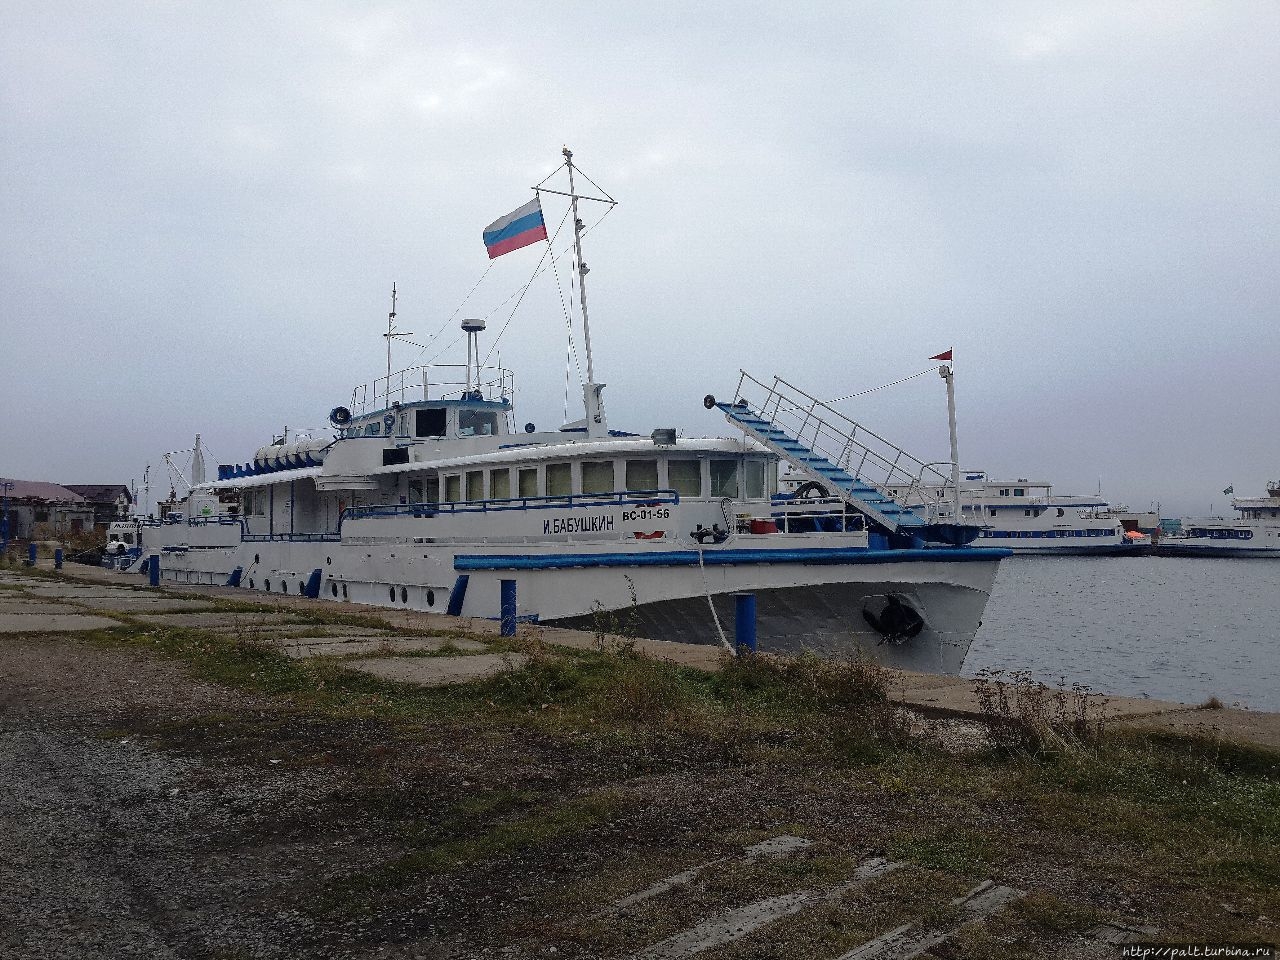 В Листвянку через Ангару осенью перевозил вот такой симпатичный теплоходик, а паром Байкальские воды был на отдыхе и ремонте Порт-Байкал, Россия